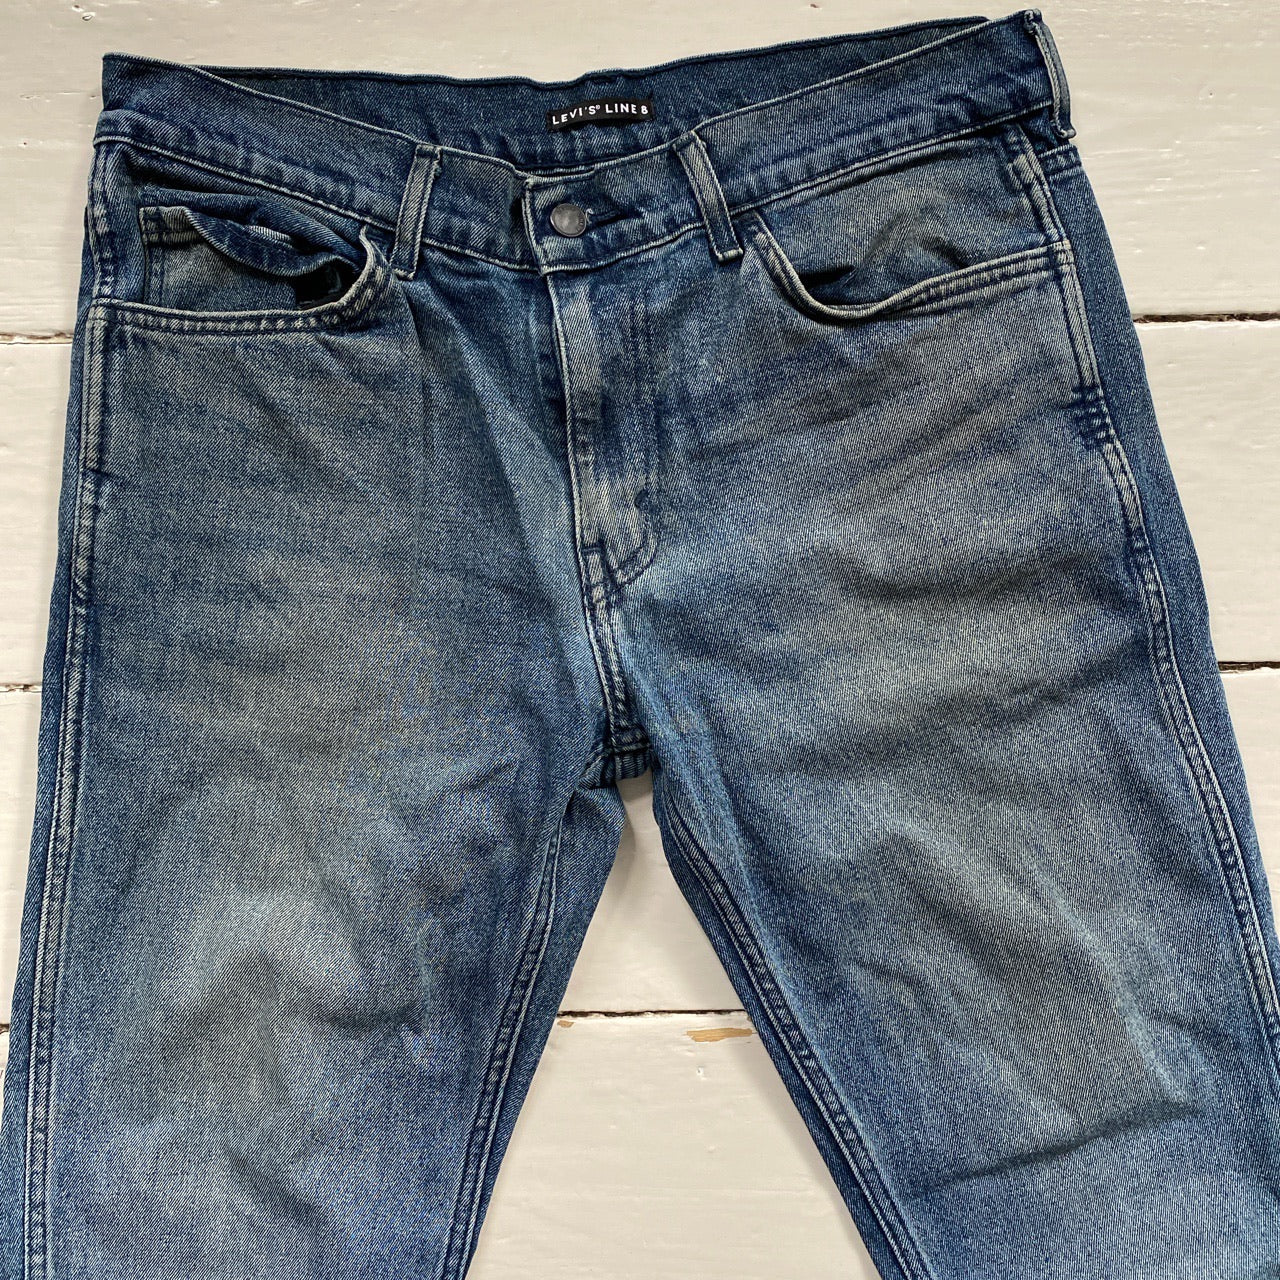 Levis Line 8 Slim Jeans (32/32)